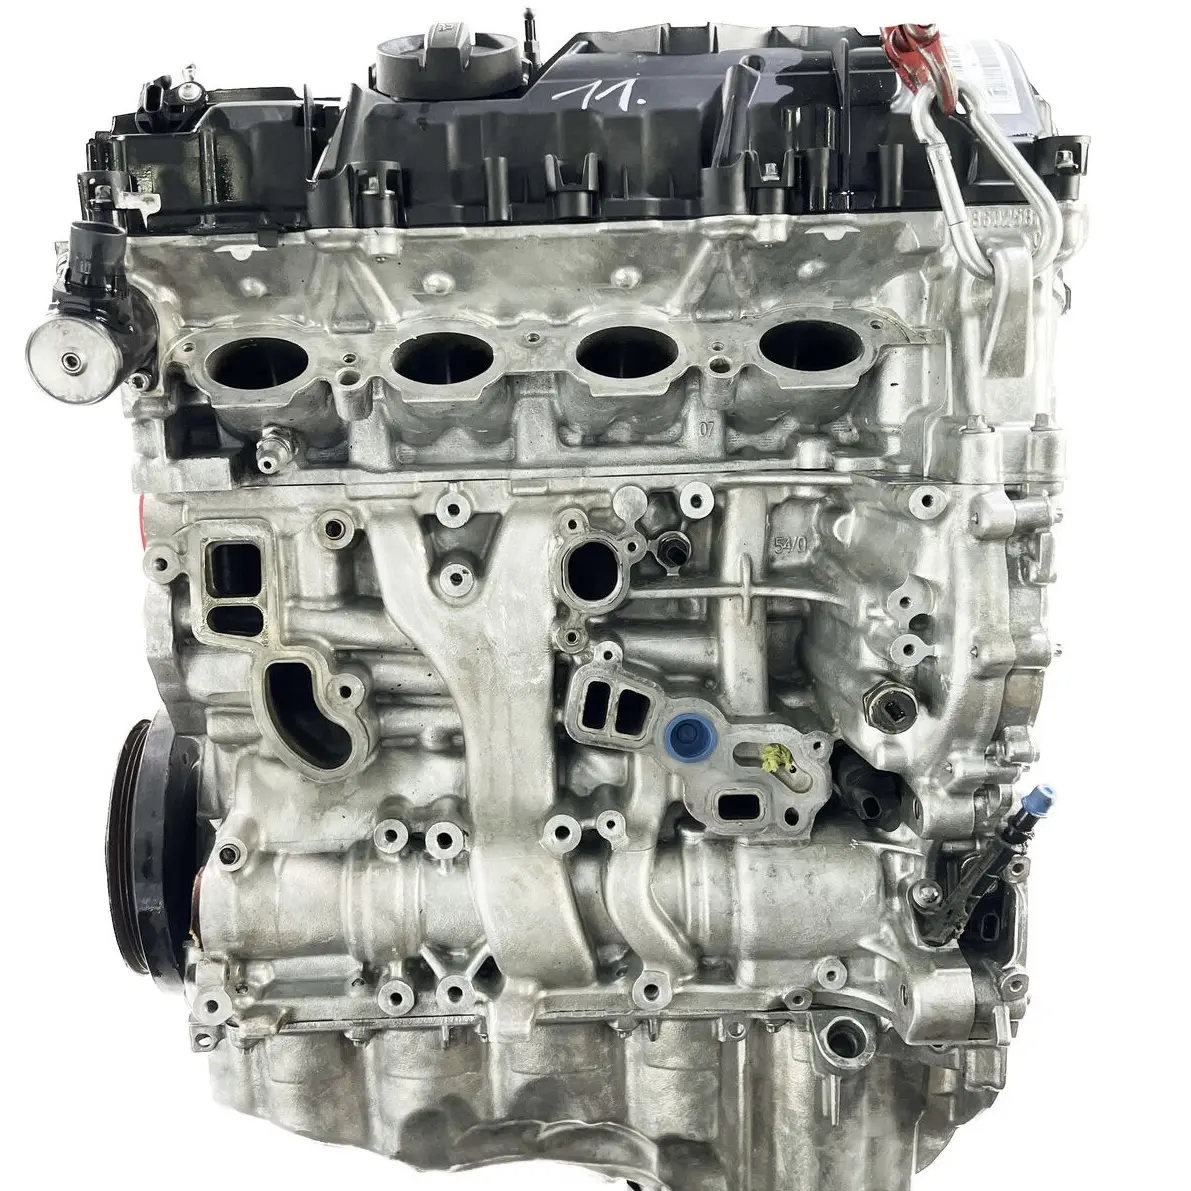 बीएमडब्ल्यू 2 3 4 5 सीरीज F20 F49 G28 F35 2.0L टर्बो इंजन के लिए B48b20 इंजन असेंबली मोटर